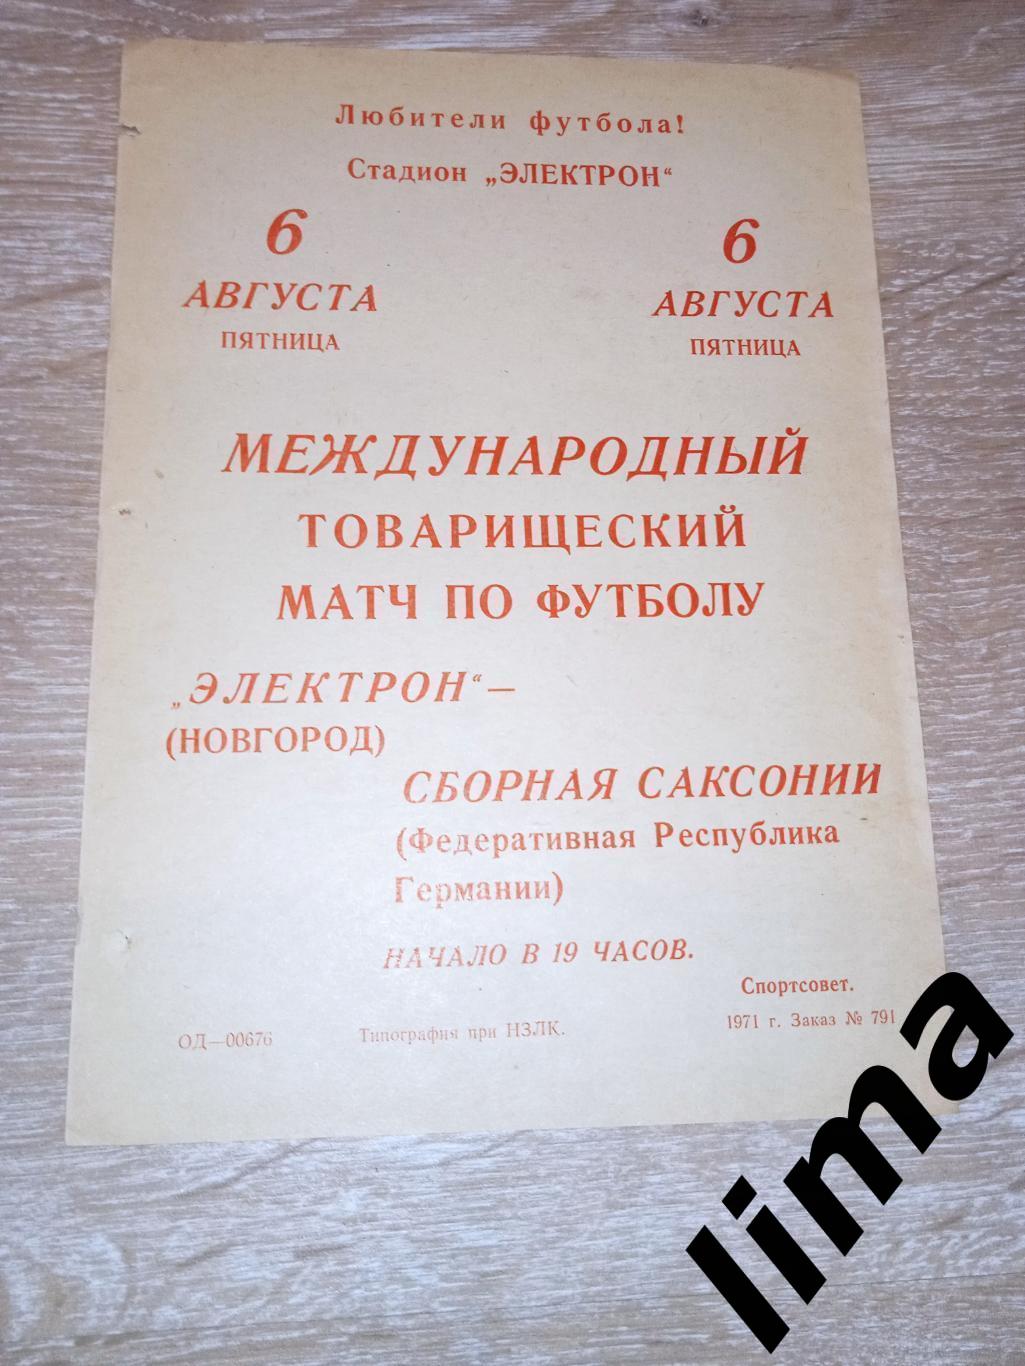 Раритет!Афиша- программа Электрон Новгород-Сборная Саксонии(ФРГ)6.08.1971